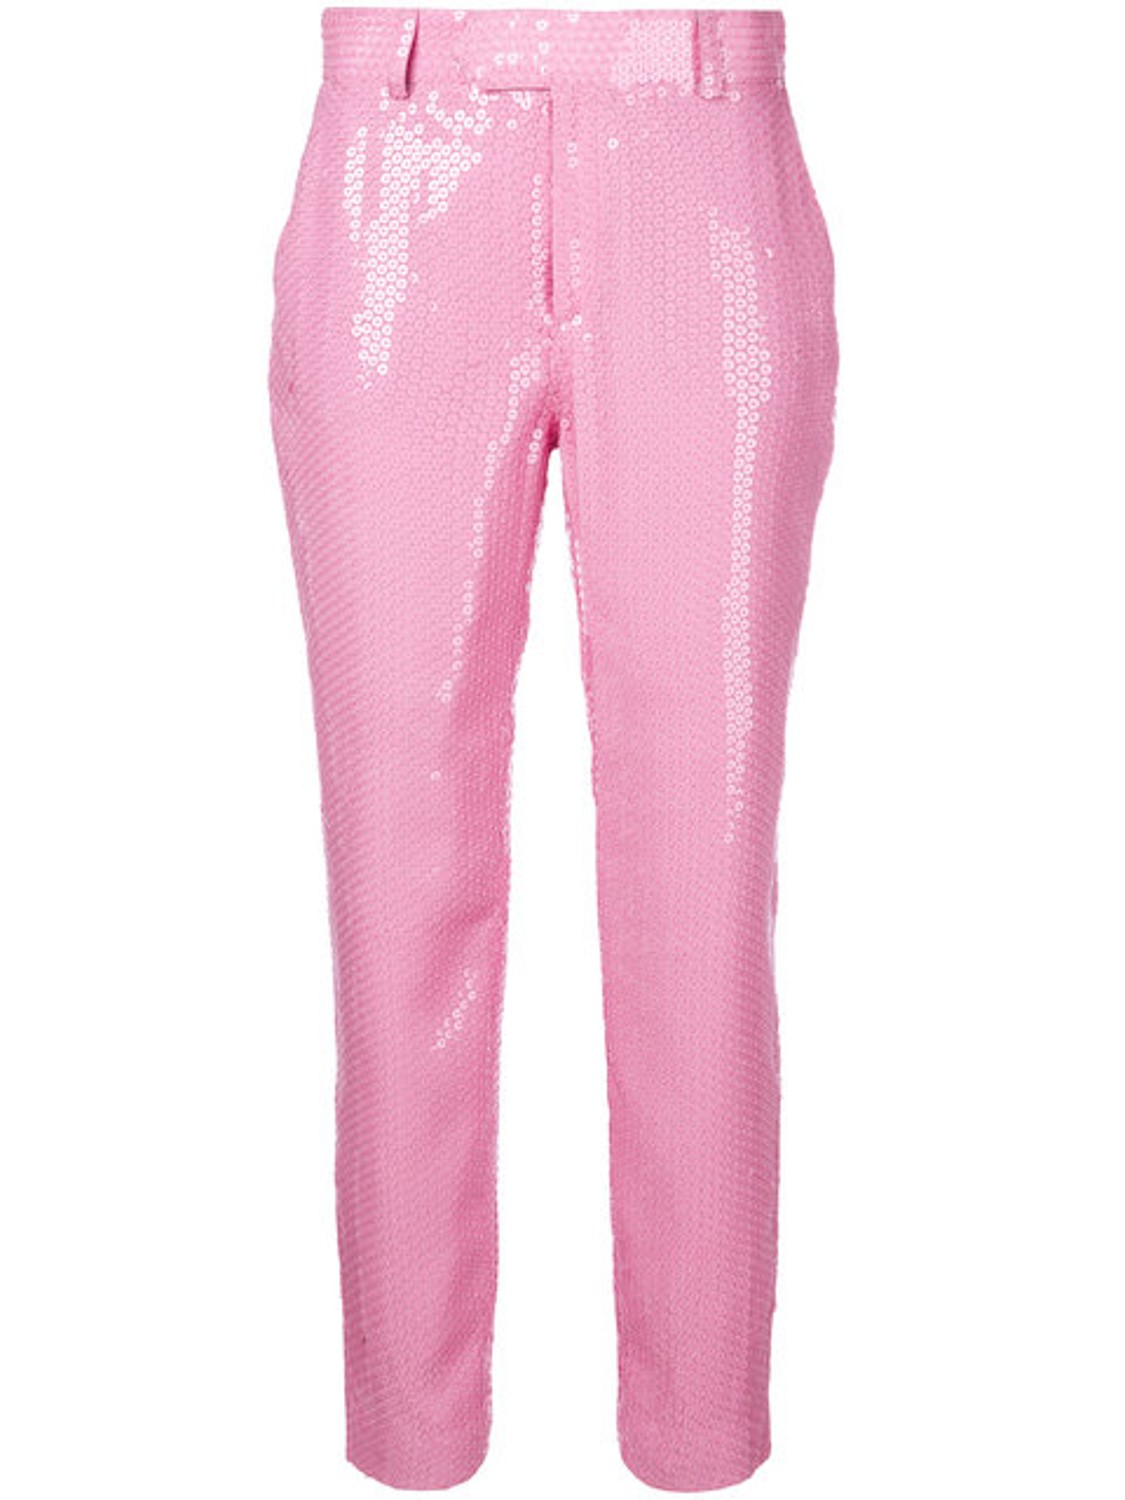 shop MSGM Saldi Pantaloni: Pantalone MSGM, rosa, di paillettes, lunghezza alla caviglia, chiusura davanti con bottone e cerniera.

Composizione: 100% viscosa. number 1244